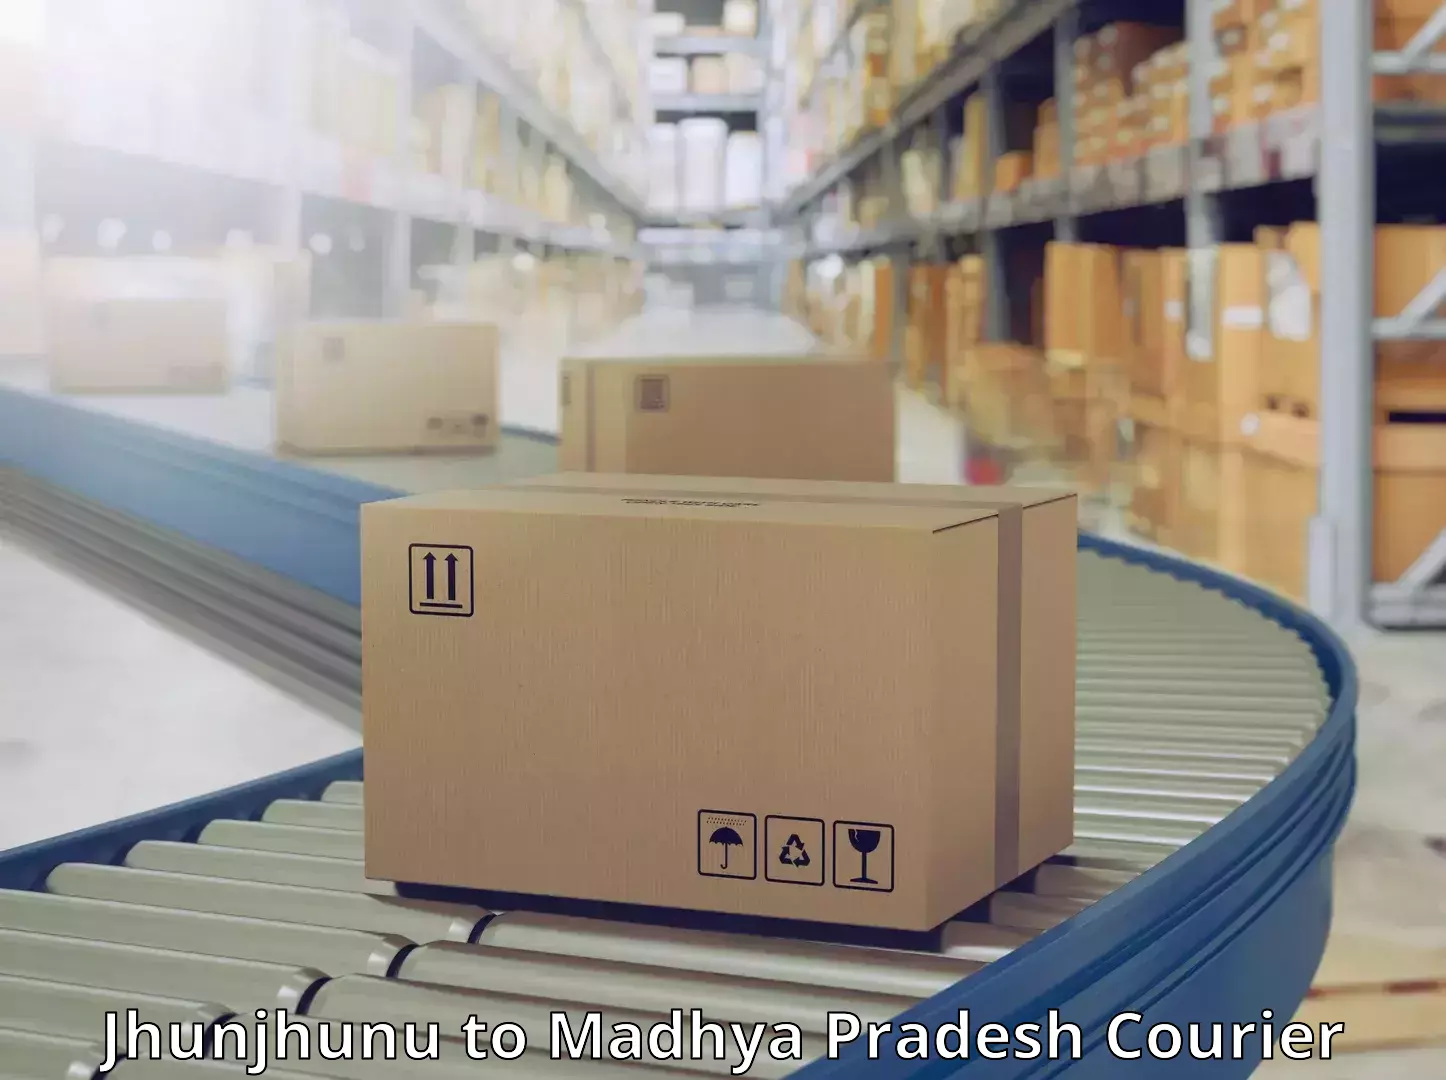 Multi-national courier services Jhunjhunu to Madhya Pradesh